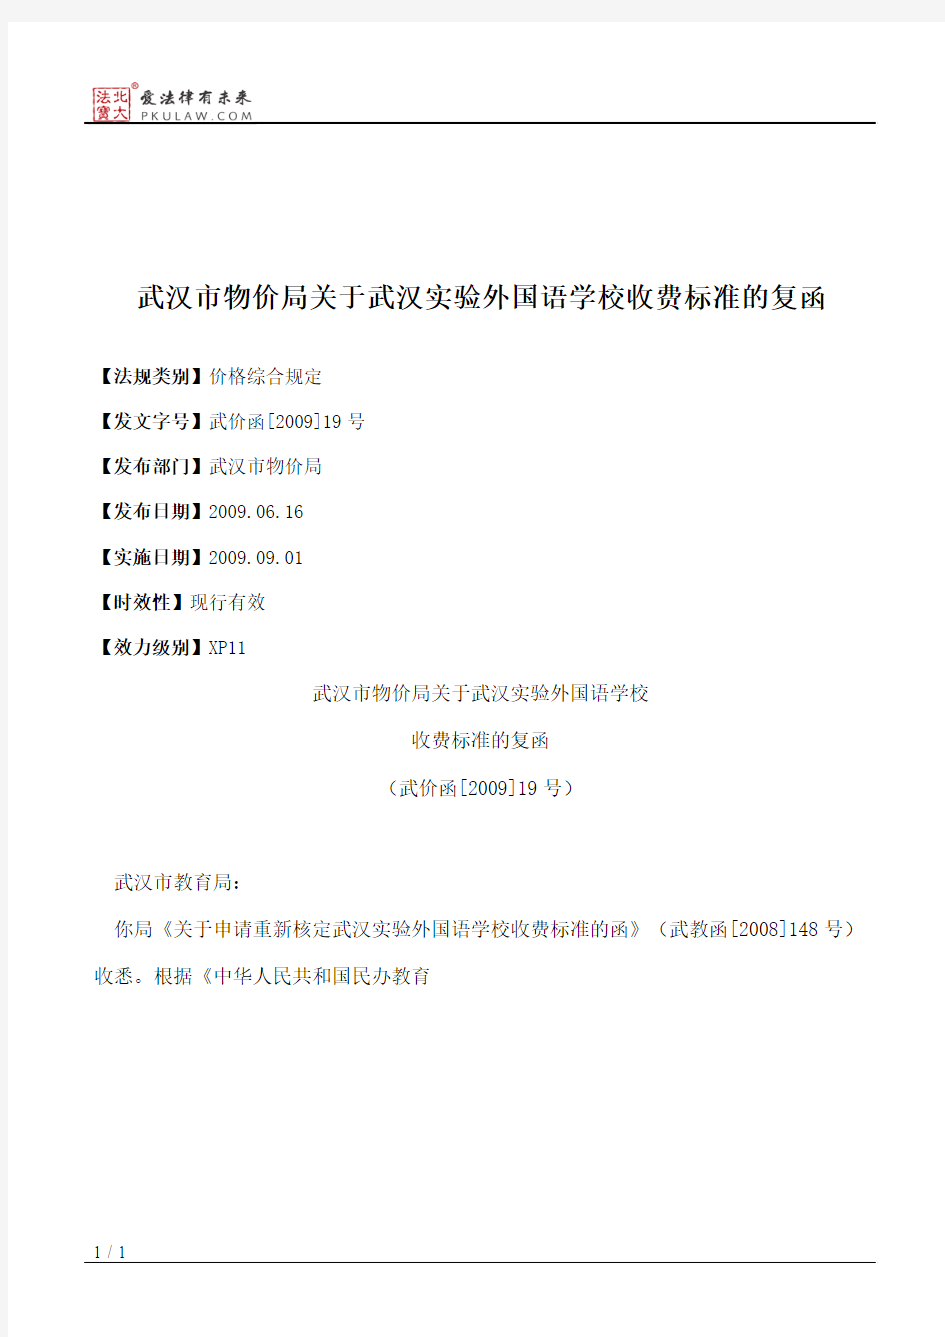 武汉市物价局关于武汉实验外国语学校收费标准的复函